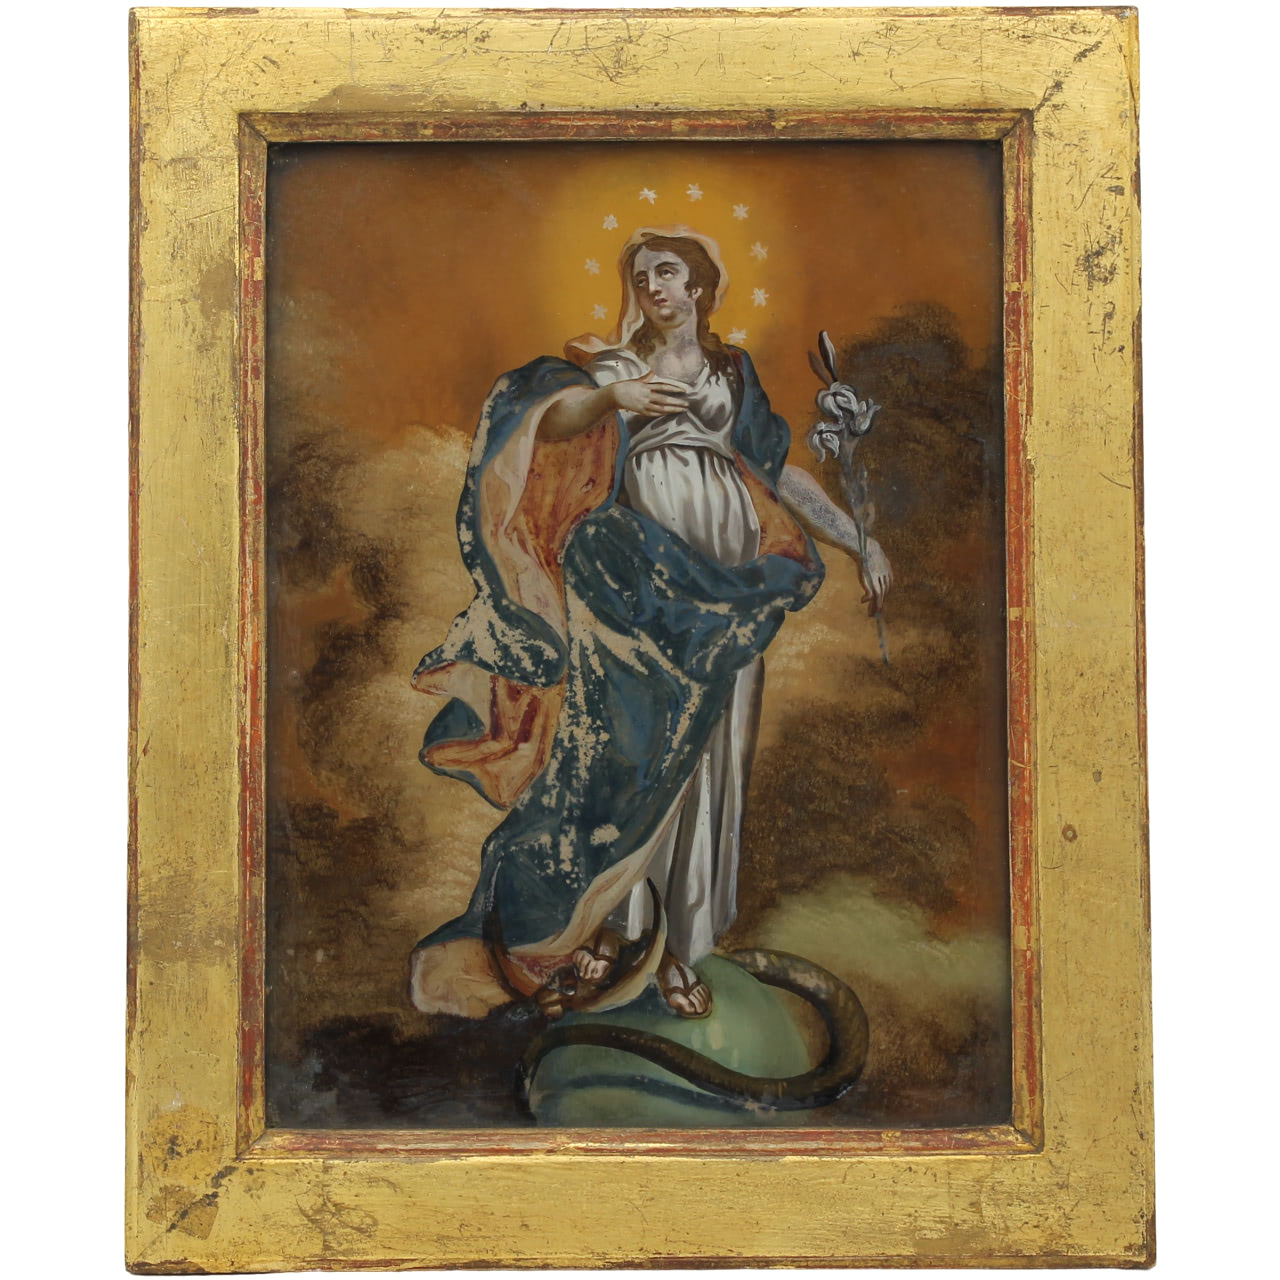 Scuola siciliana del secolo XVIII "La Madonna e San Giuseppe" - Sicilian school of the eighteenth century "The Madonna and St. Joseph"